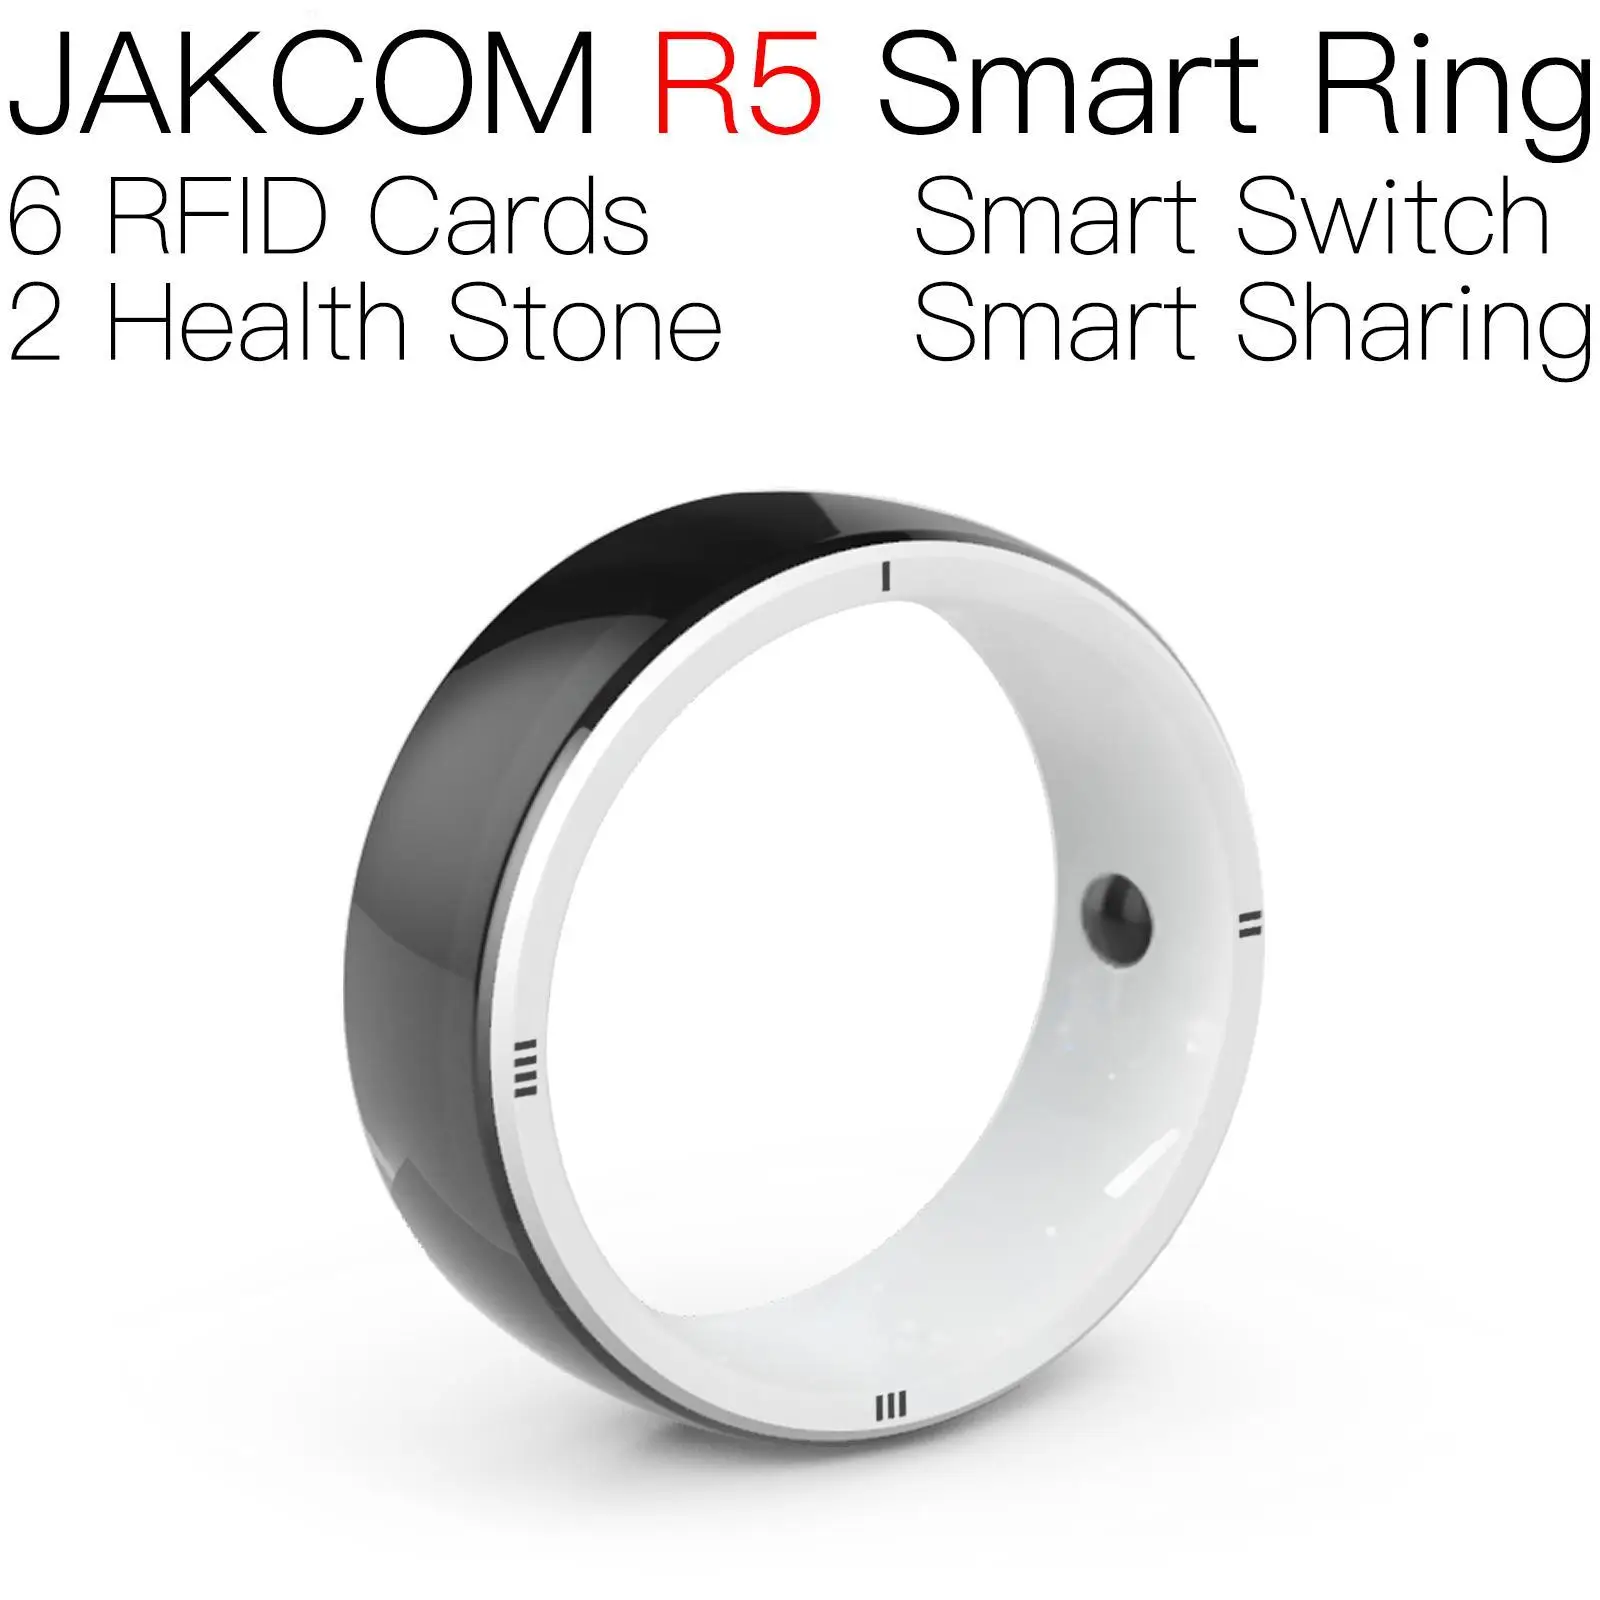 Умное кольцо JAKCOM R5 лучше, чем раньше, брелок с мини-чипом, с возможностью записи tk4200, rfid 125, заготовки для гравировки andruino r3, индивидуальный идентификатор из ПВХ